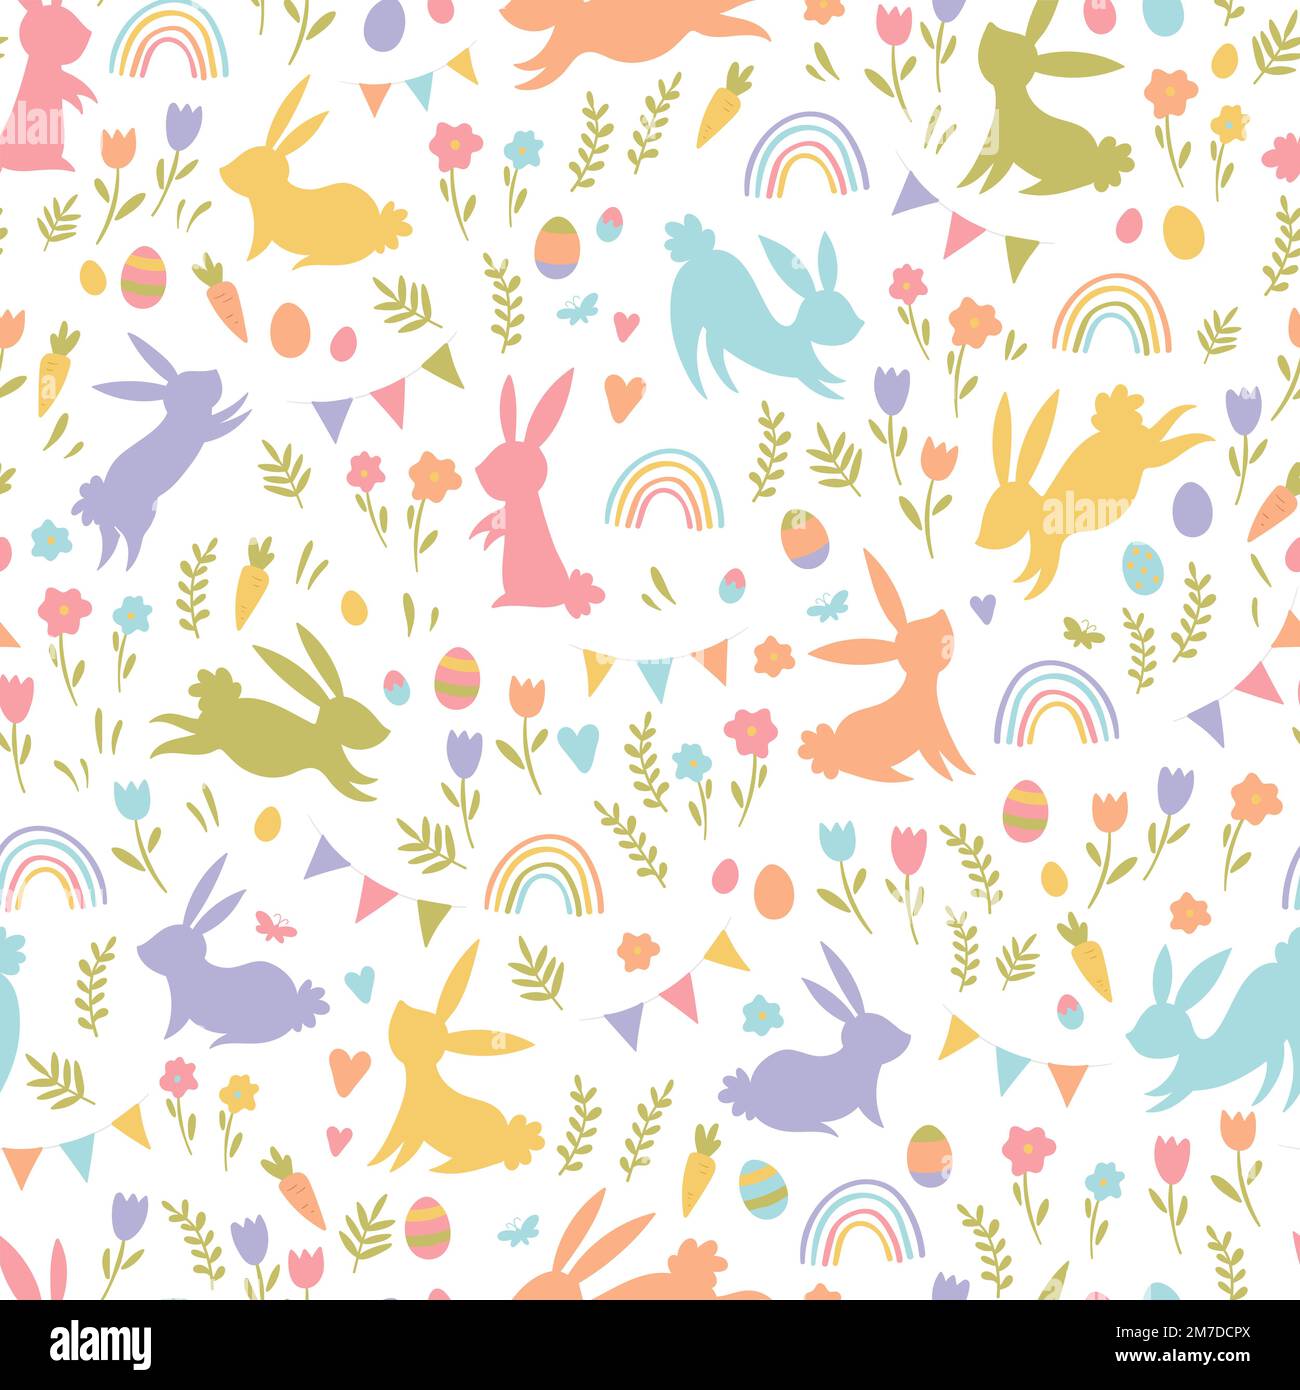 Joli motif de Pâques dessiné à la main avec des lapins, des fleurs, des œufs de pâques, un beau fond, idéal pour les cartes de Pâques, bannière, textiles, fonds d'écran Illustration de Vecteur